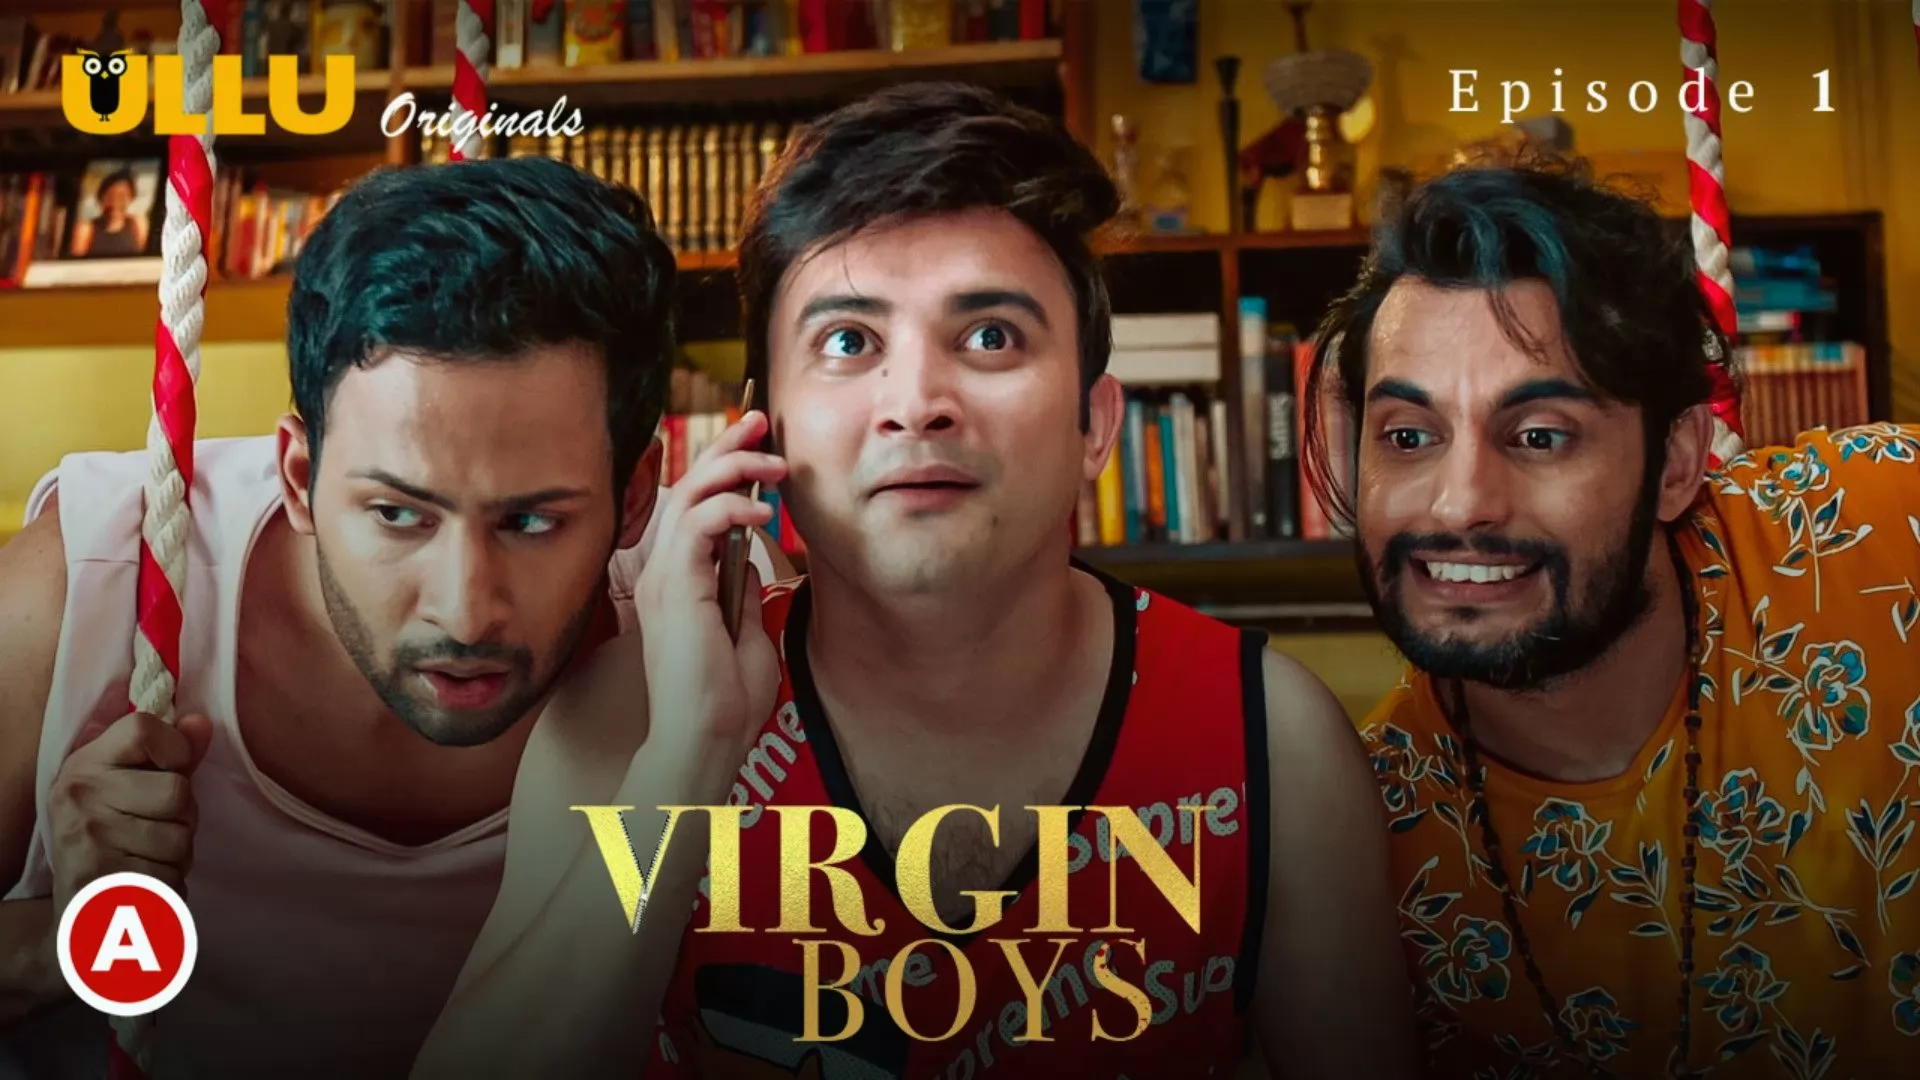  Virgin Boys